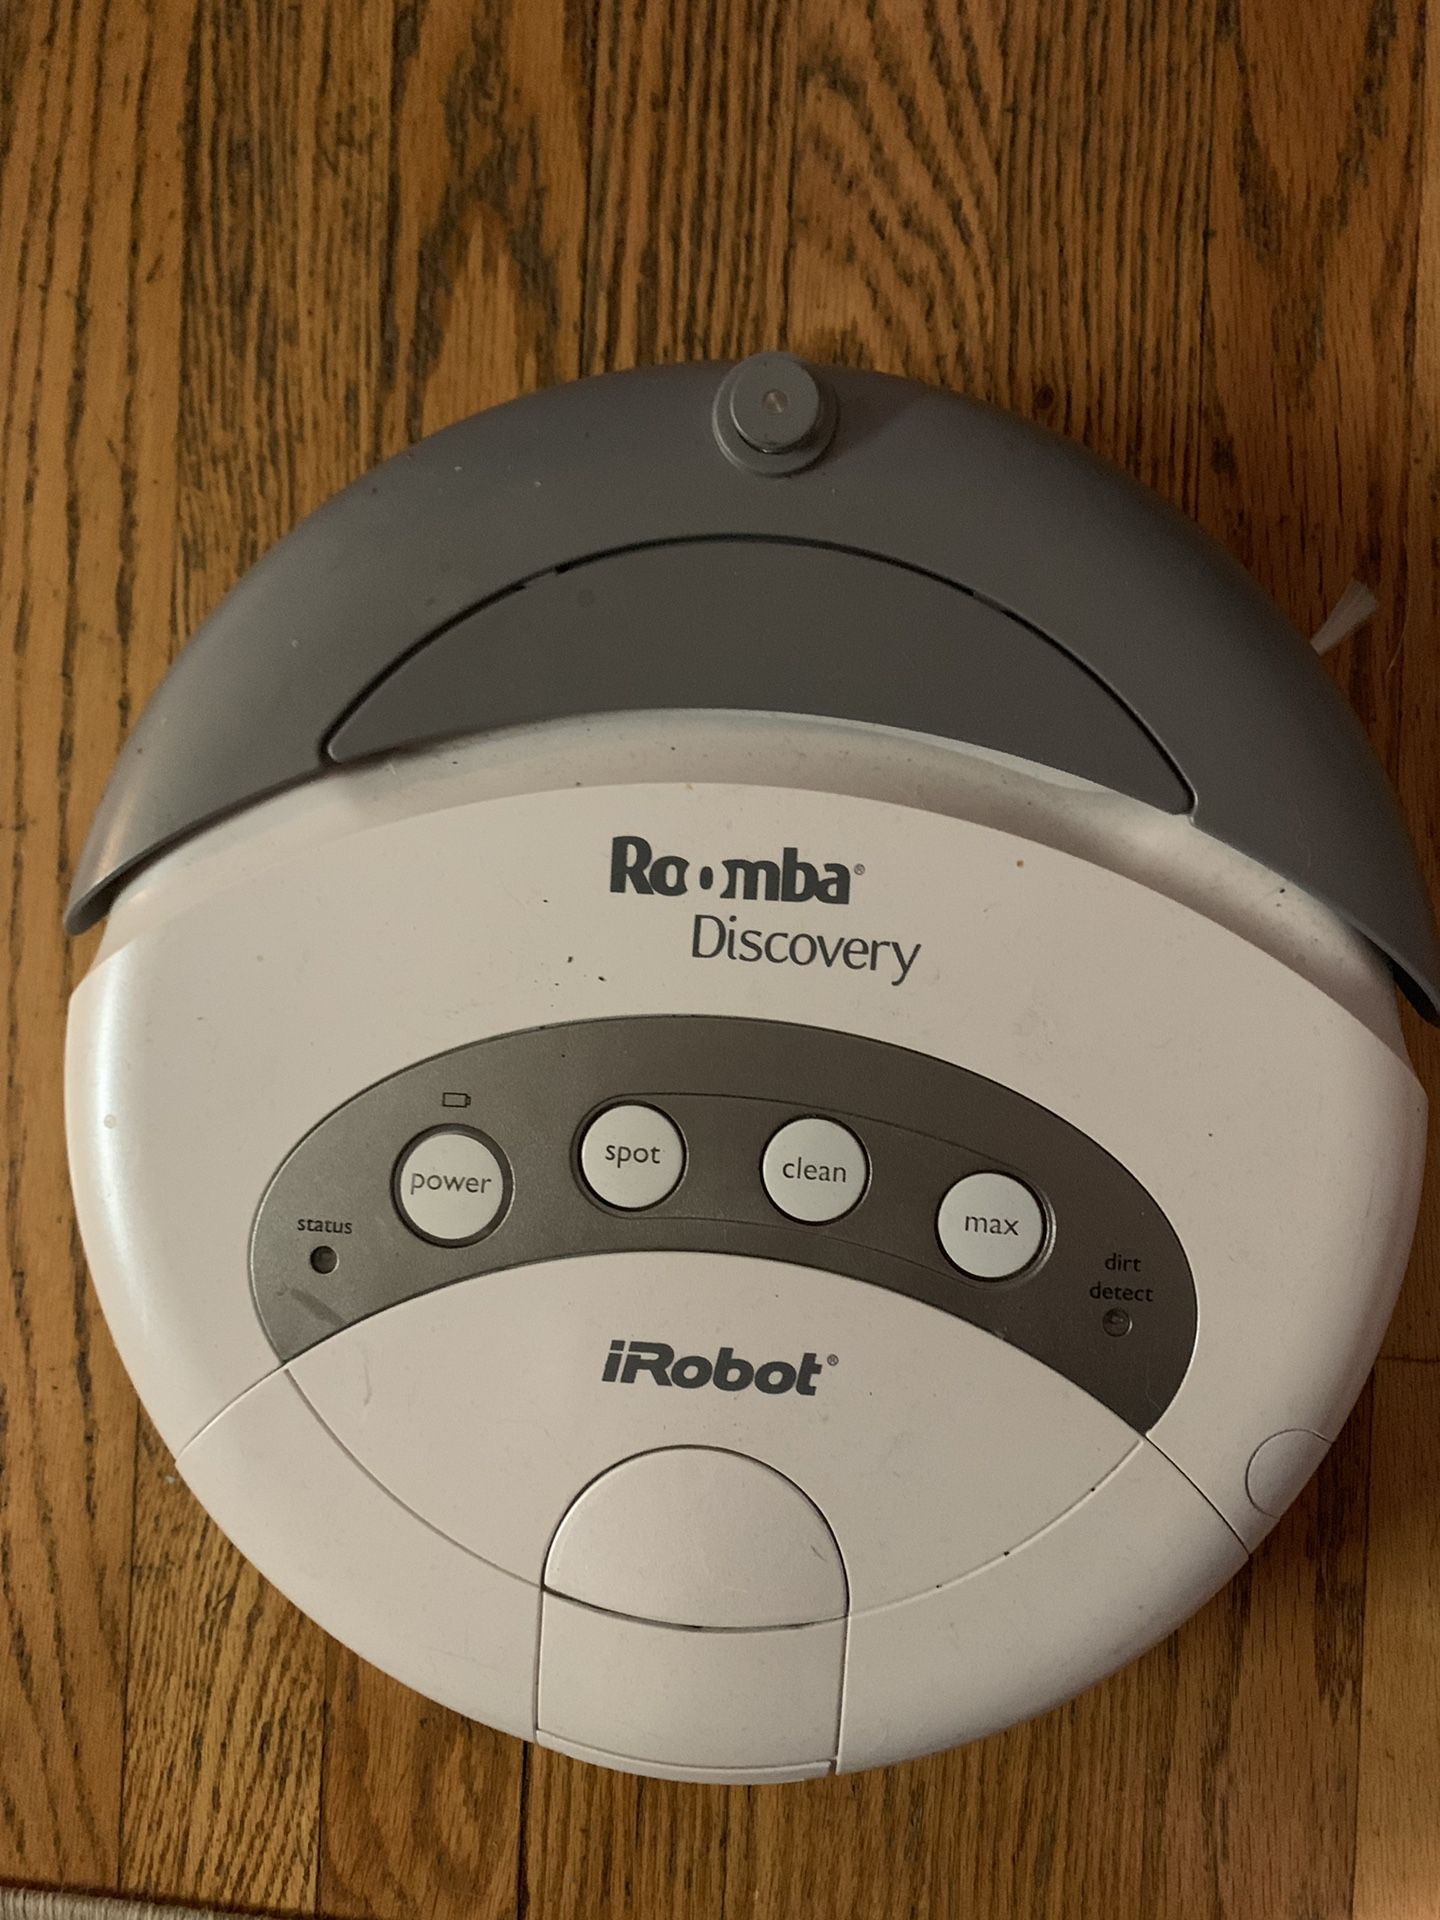 Roomba Discovery IRobot vacuum